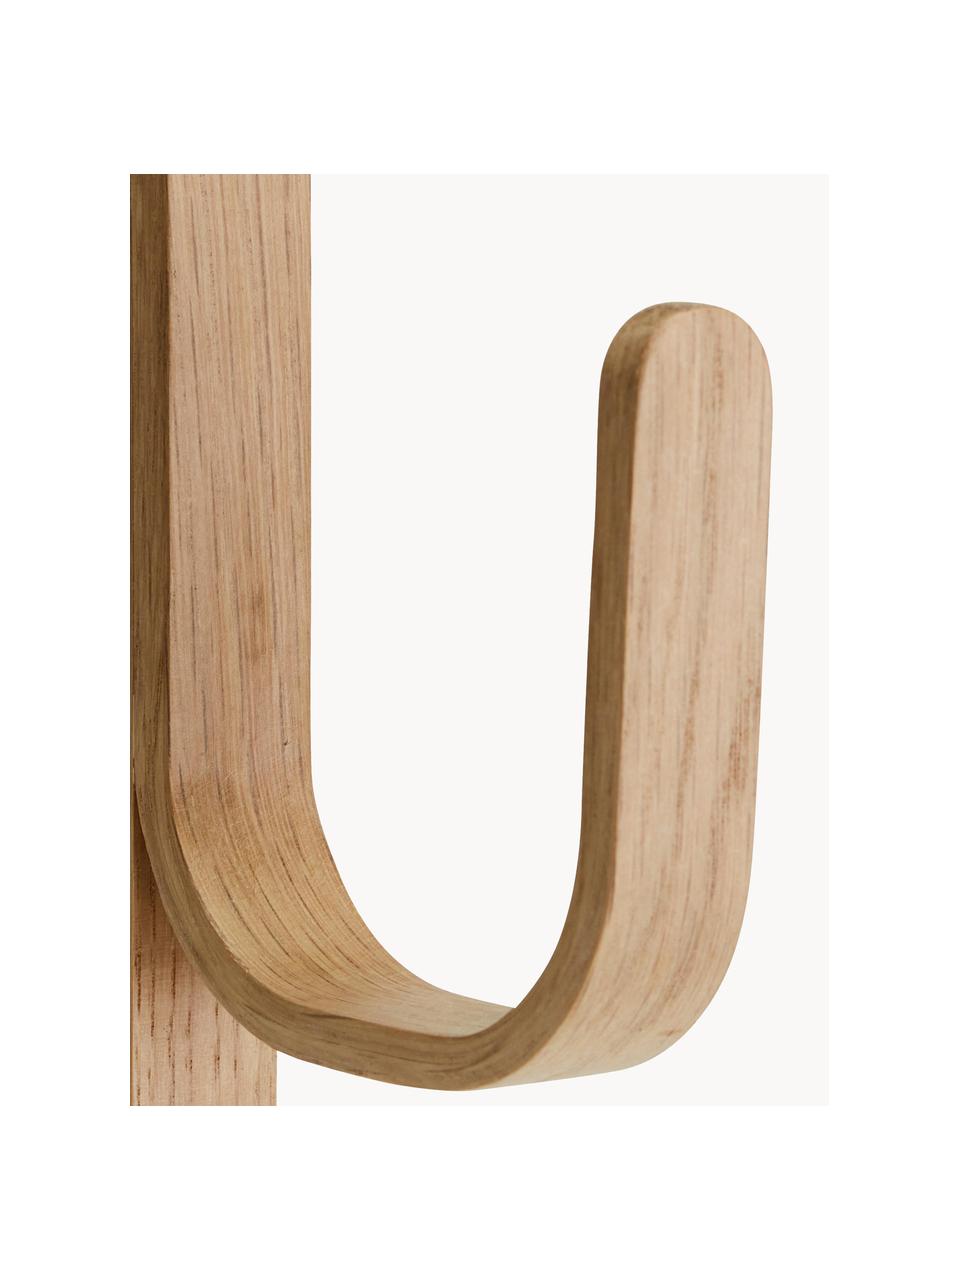 Garderobenhaken Woody aus Eichenholz, Eichenholz

Dieses Produkt wird aus nachhaltig gewonnenem, FSC®-zertifiziertem Holz gefertigt., Eichenholz, B 3 x H 23 cm